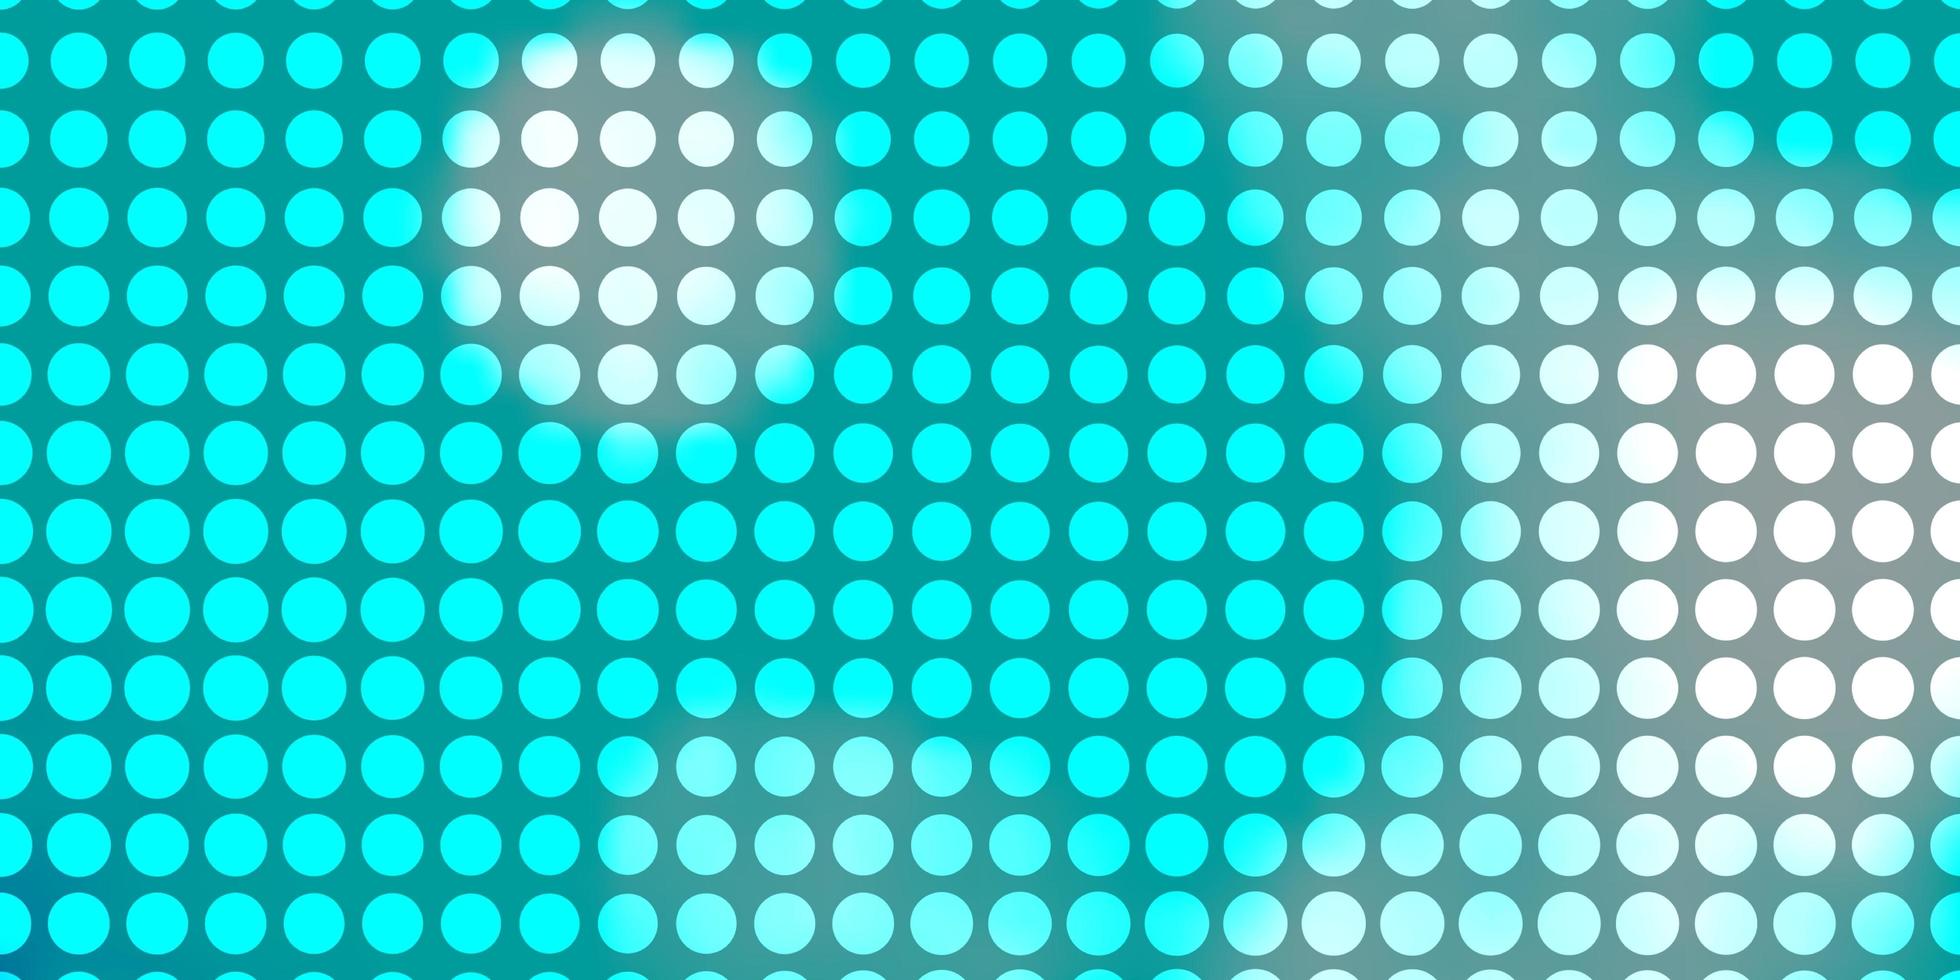 diseño de vector azul claro, verde con círculos.